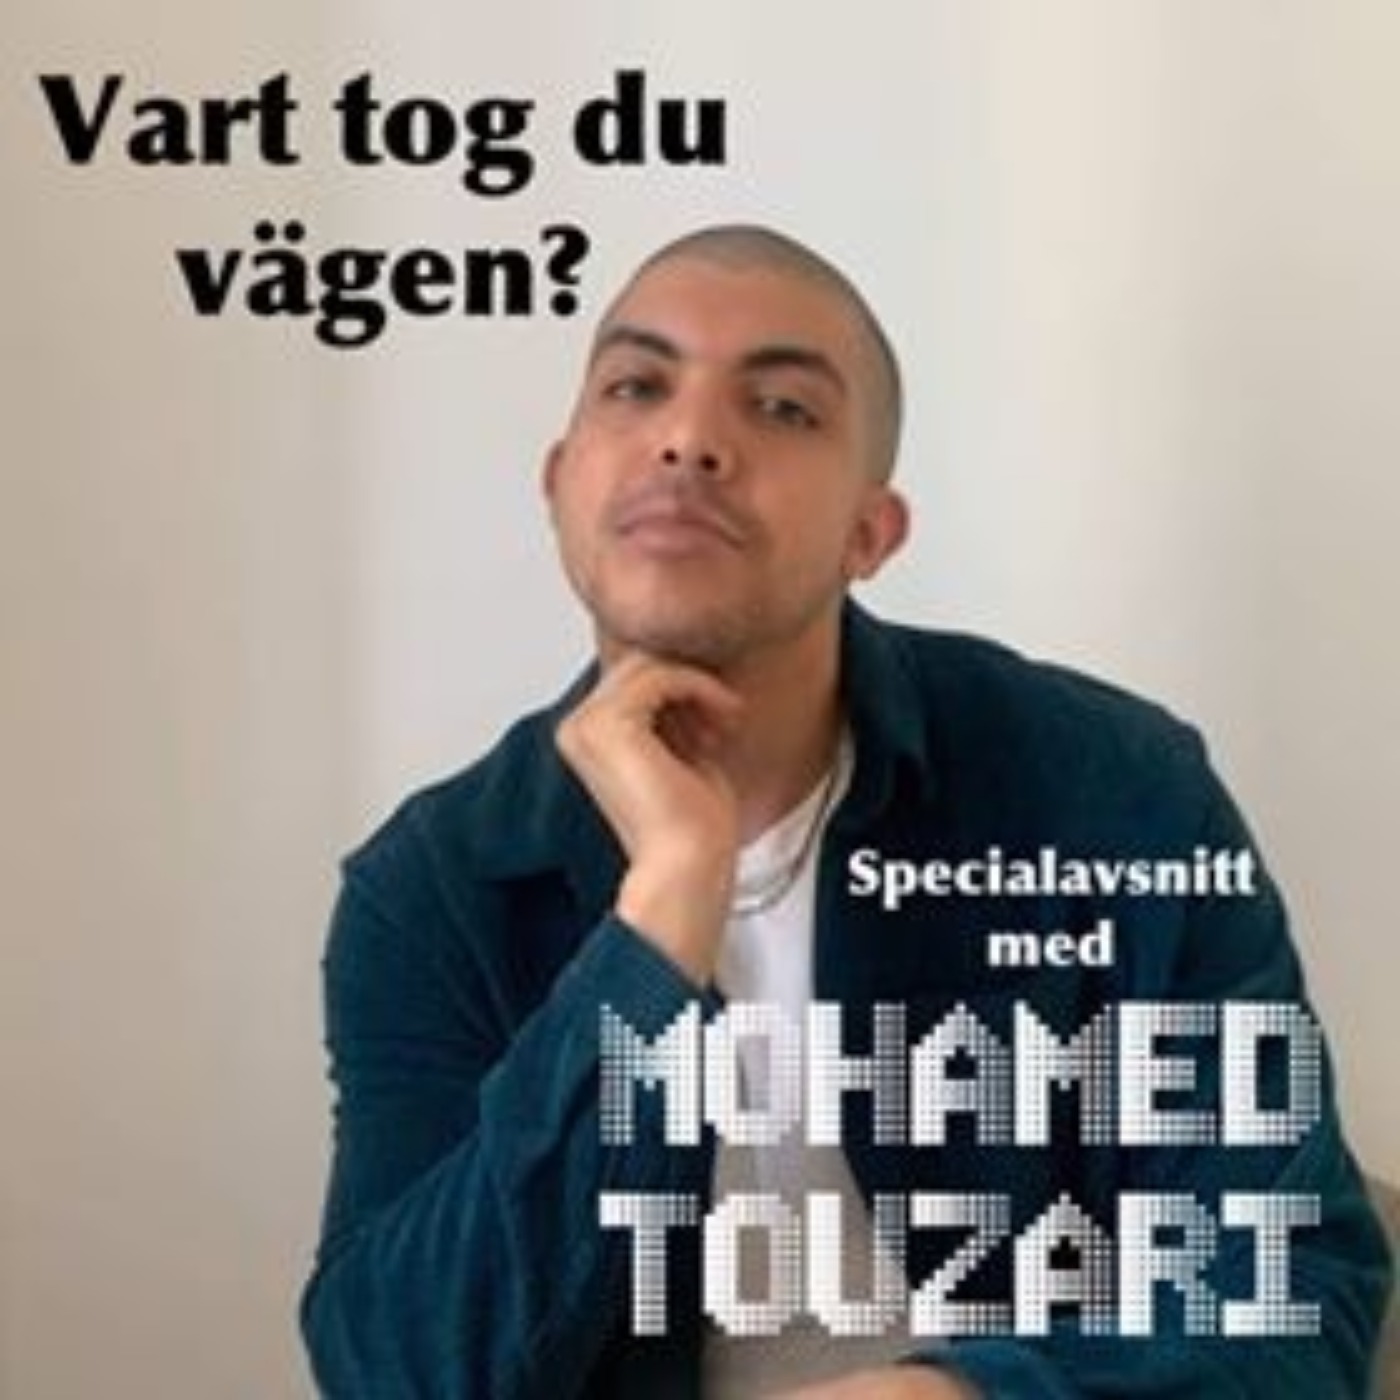 Specialavsnitt med Mohamed Touzari